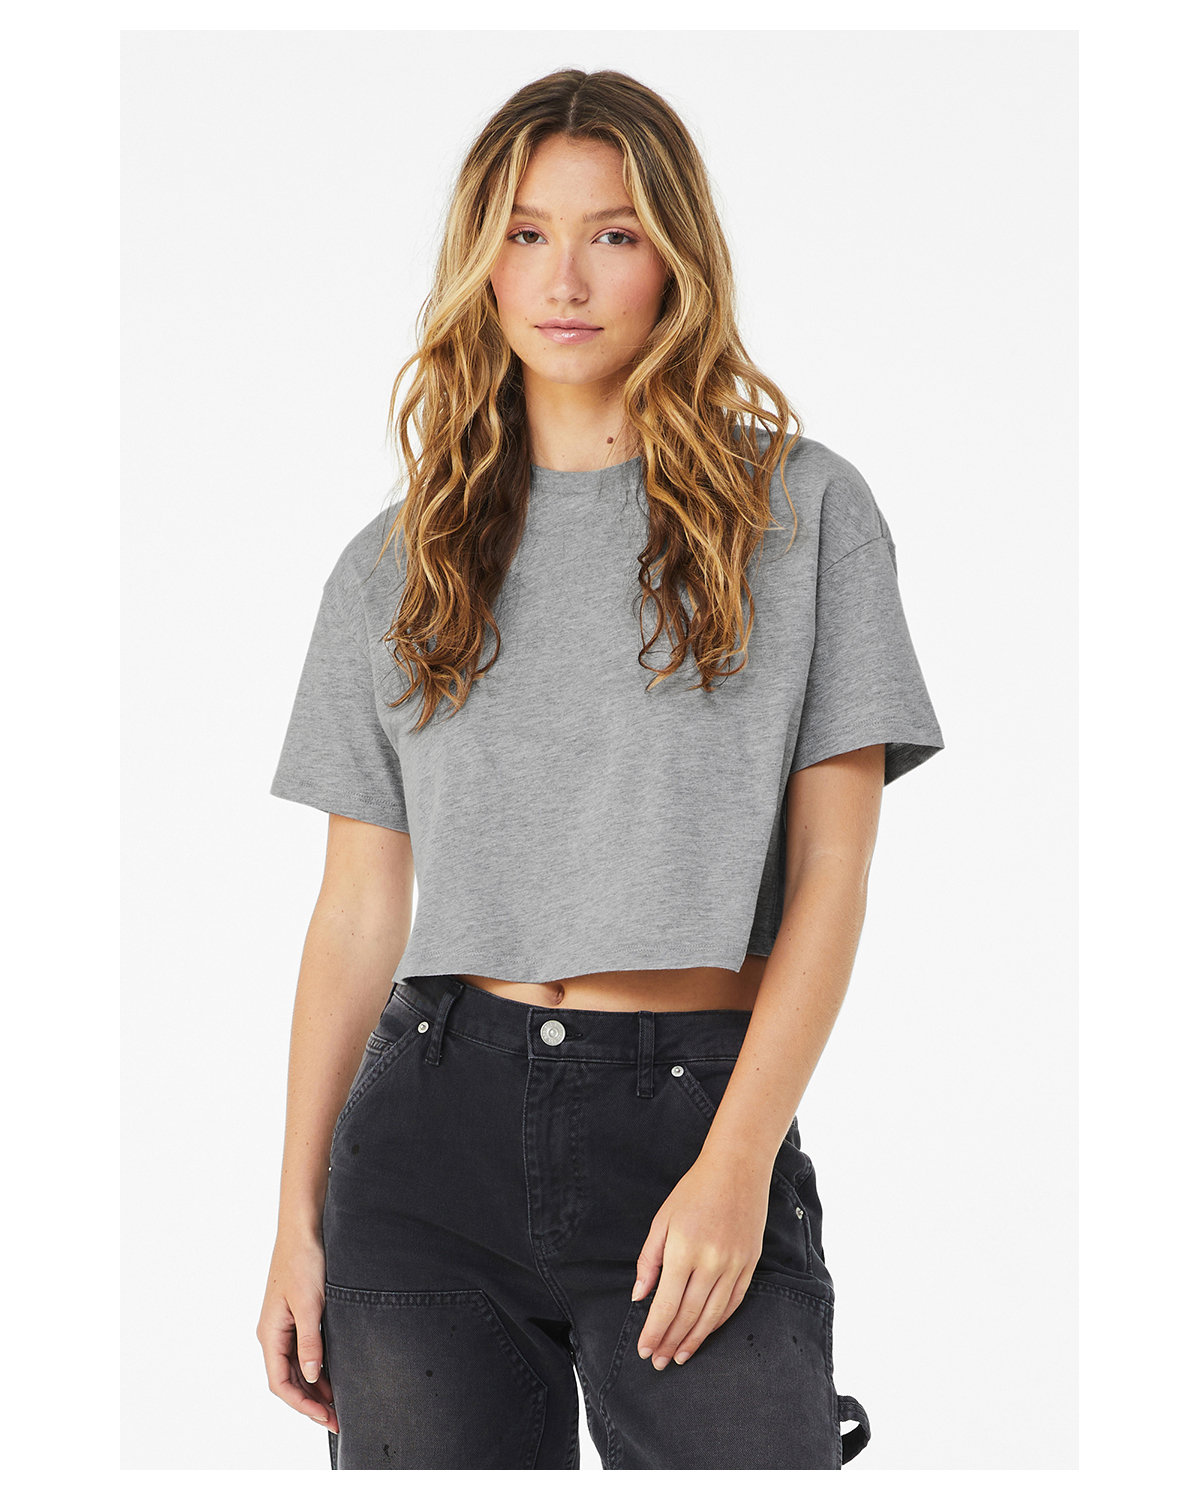 Women's Crop Tops, Cropped T-shirts